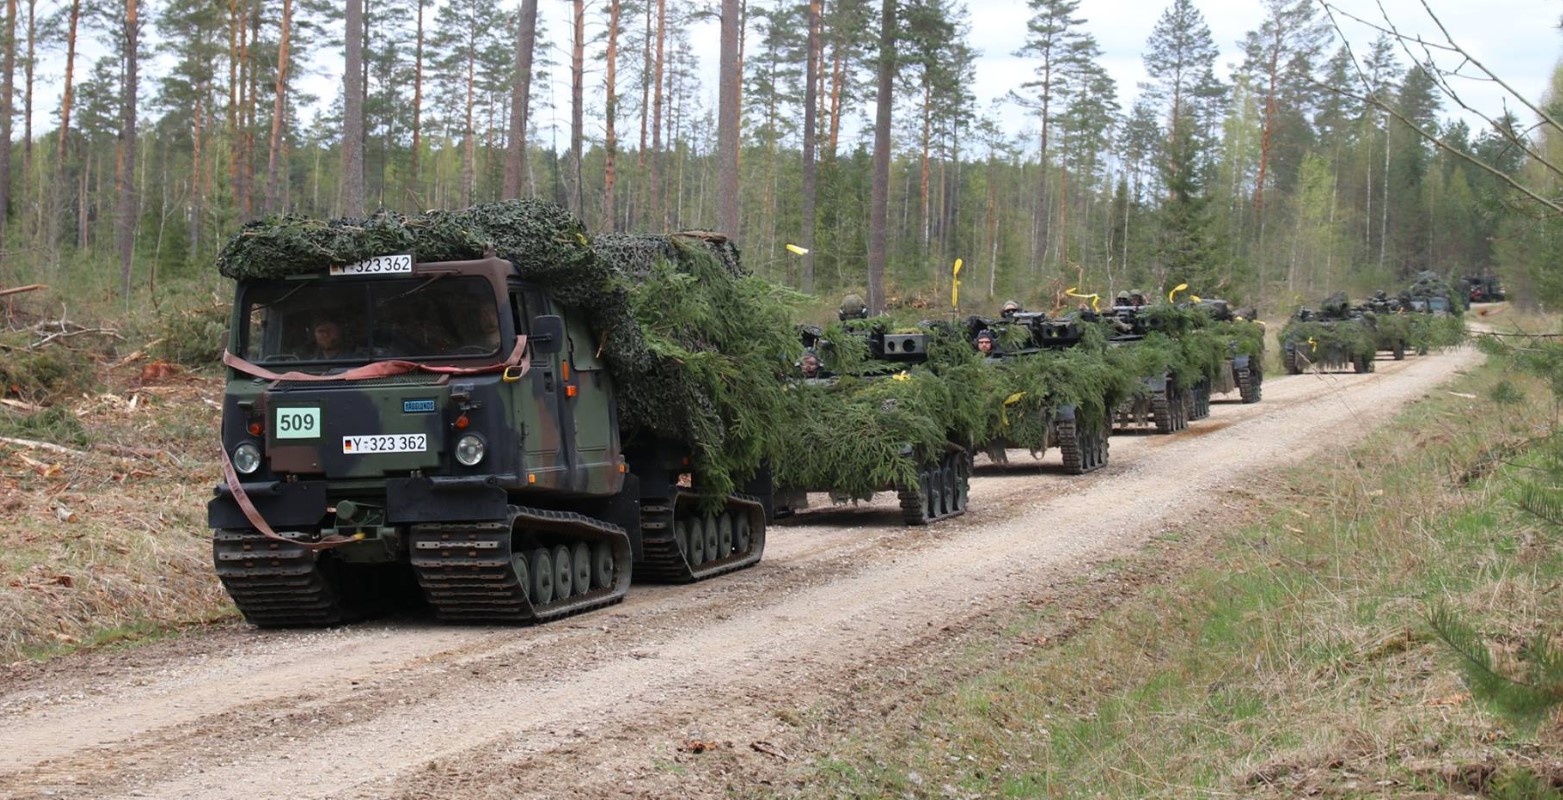 Гусеничний всюдихід Bandvagn 206 німецьких військових під час навчань в Естонії. 2018 рік. Фото: Міноборони Німеччини